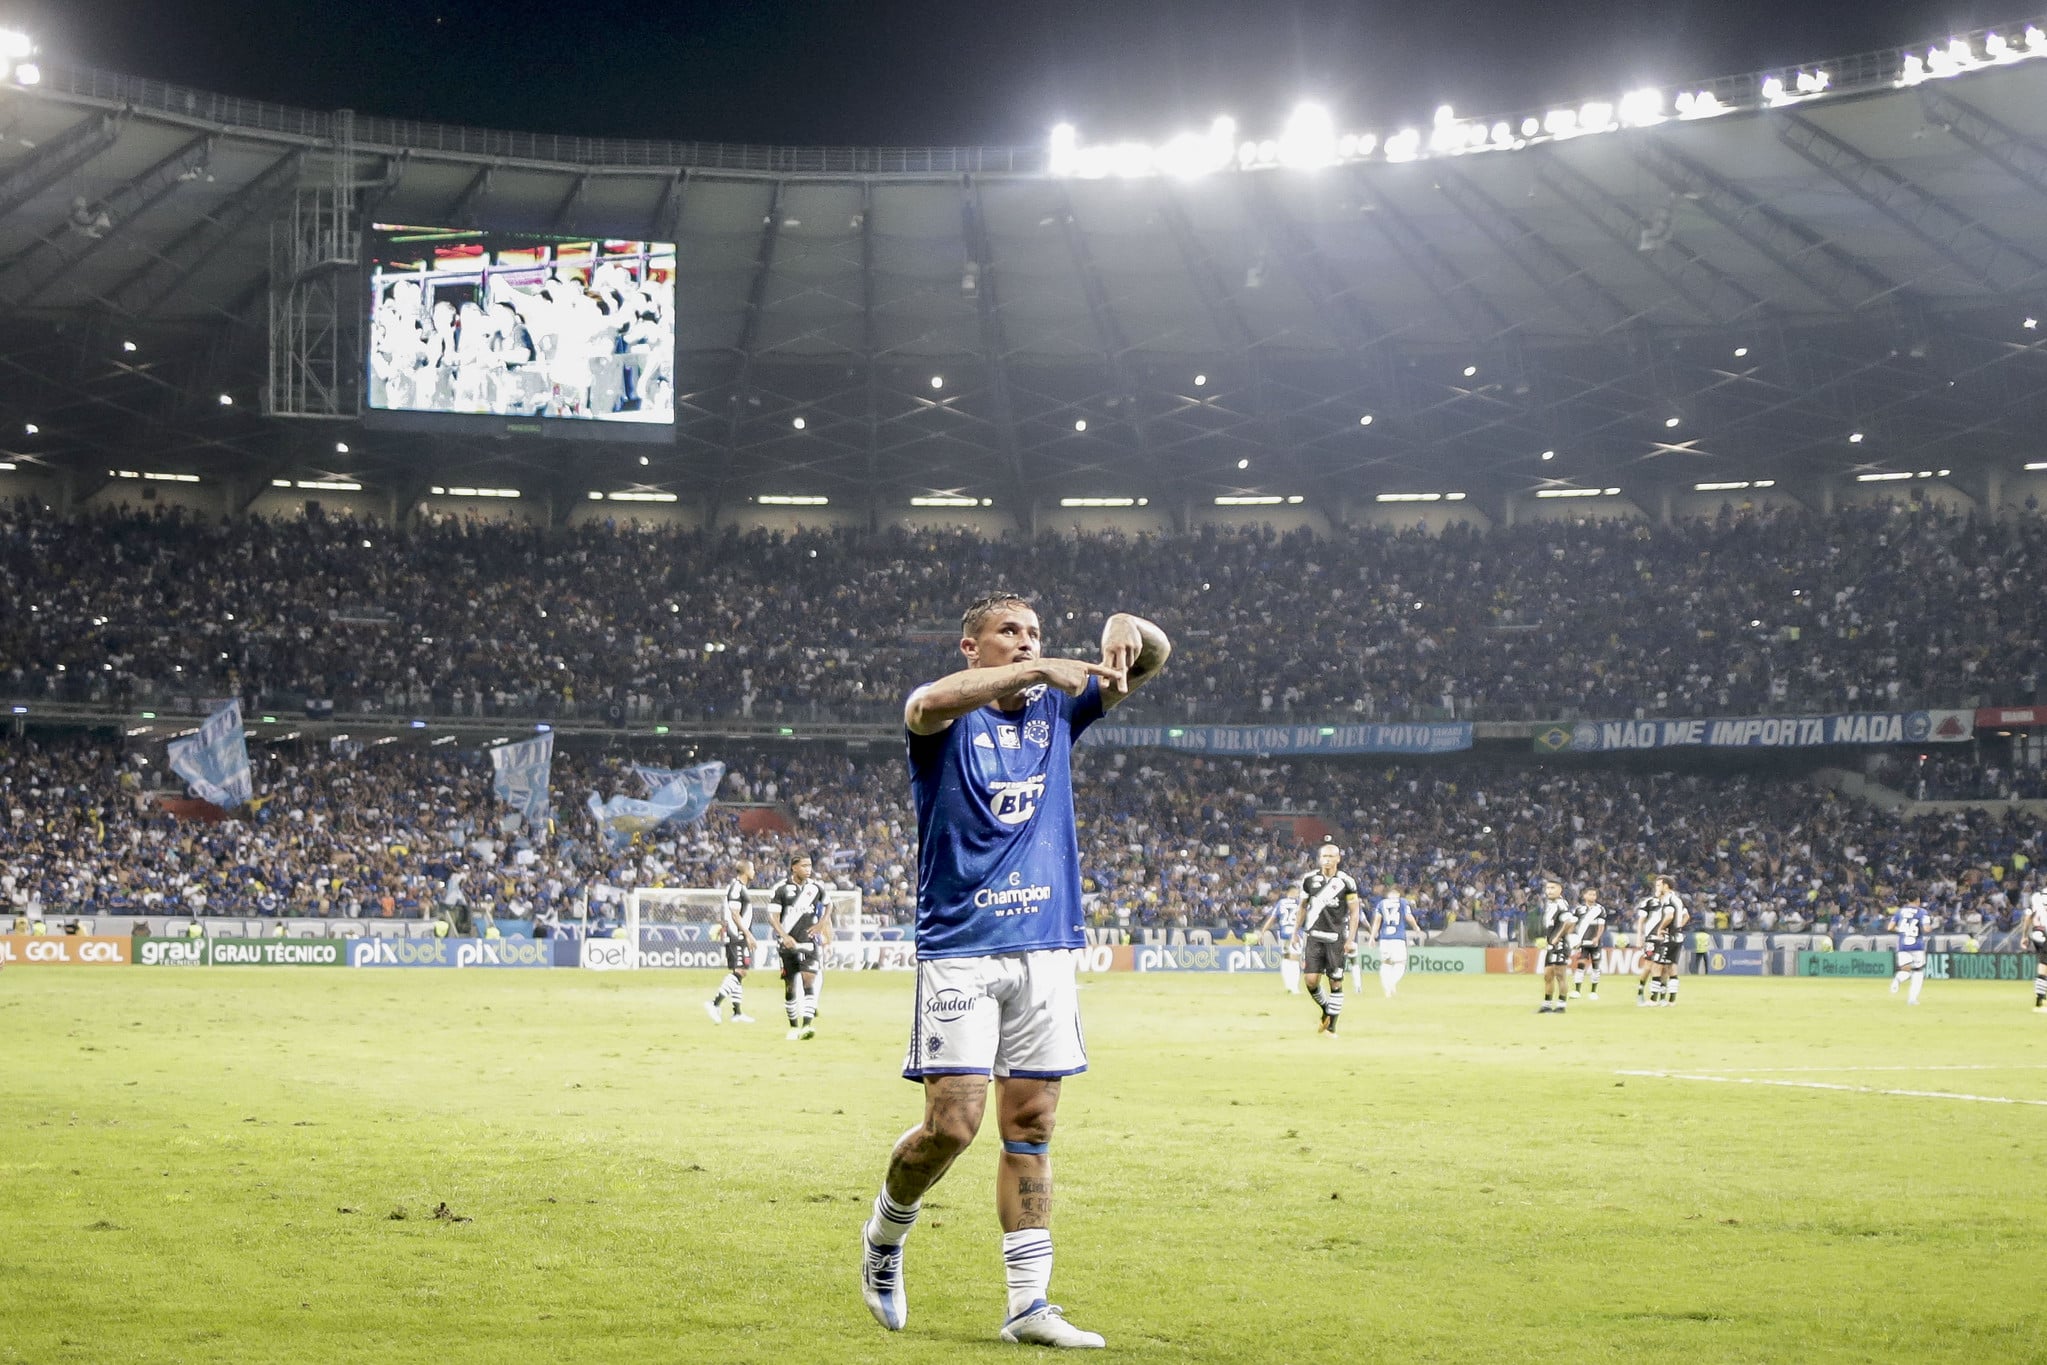 Foto: Staff_images/Cruzeiro/Flickr